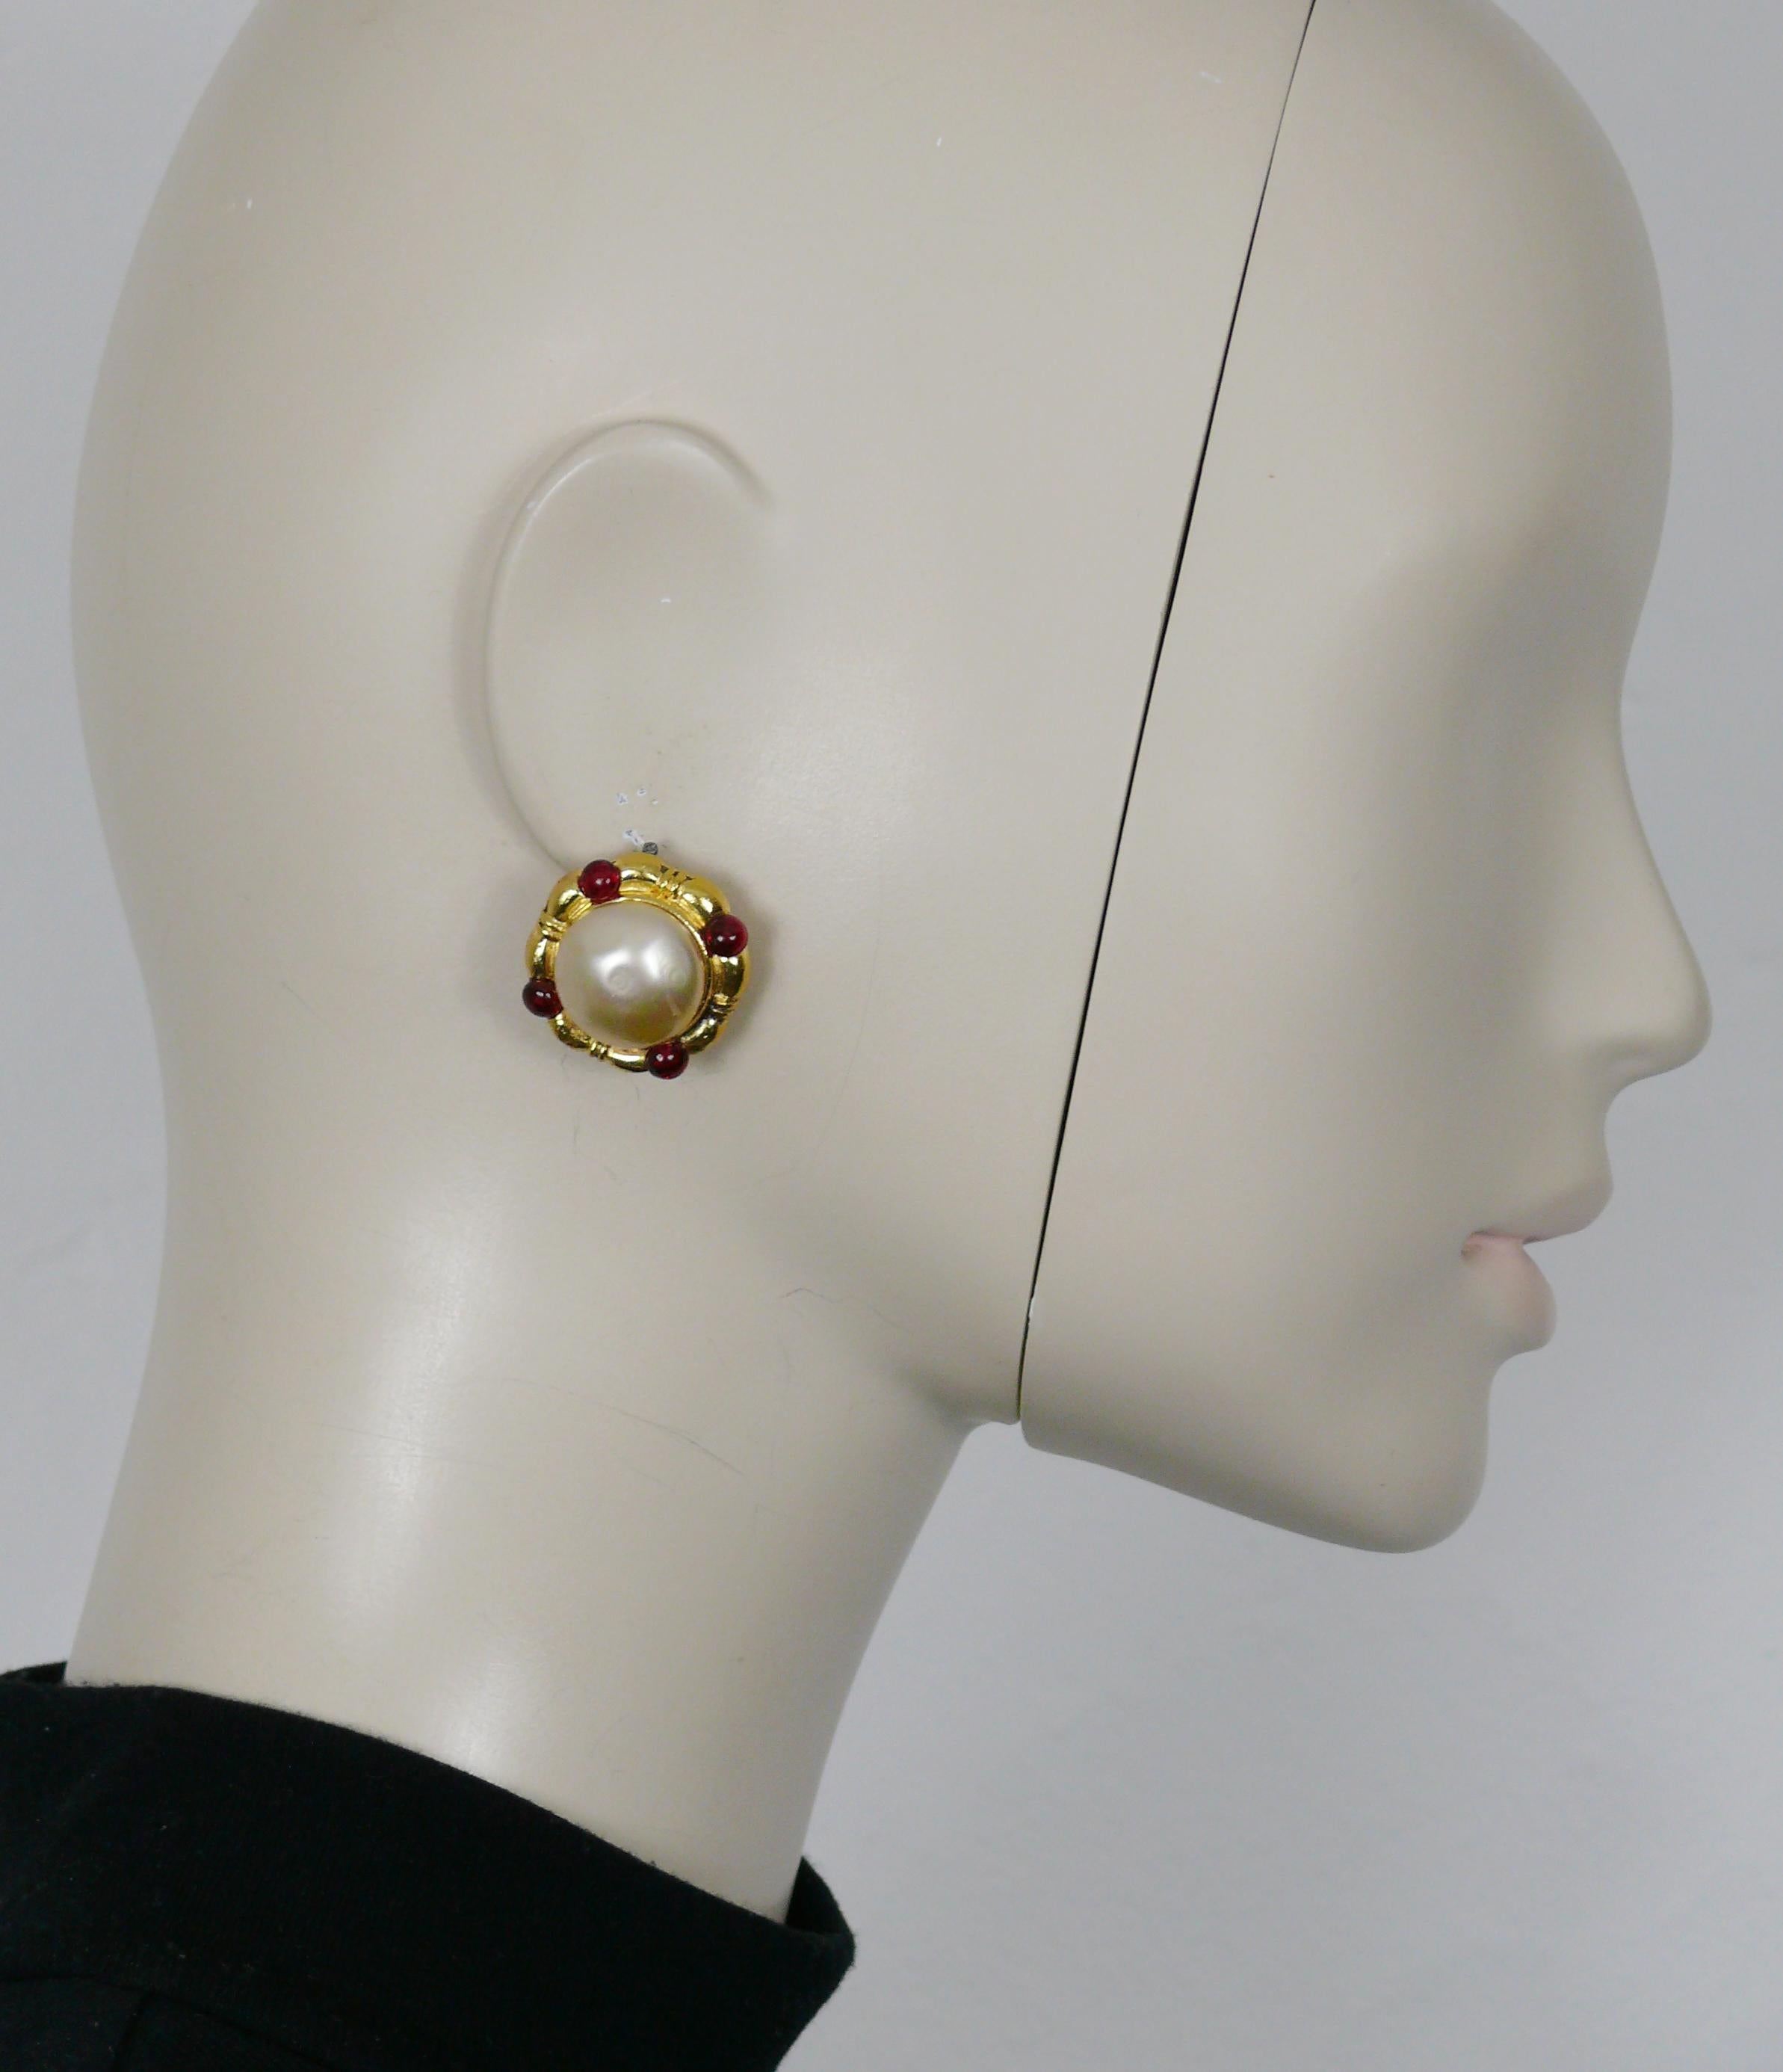 Goldfarbene CHANEL-Ohrringe mit Clipverschluss, verziert mit einer Kuppel aus Kunstperlen und vier roten Glascabochons von MAISON GRIPOIX.

Prägung auf einem Ohrring CHANEL 1982.
Auf dem anderen Ohrring ist CHANEL Déposé 2023 eingeprägt.

Ungefähre